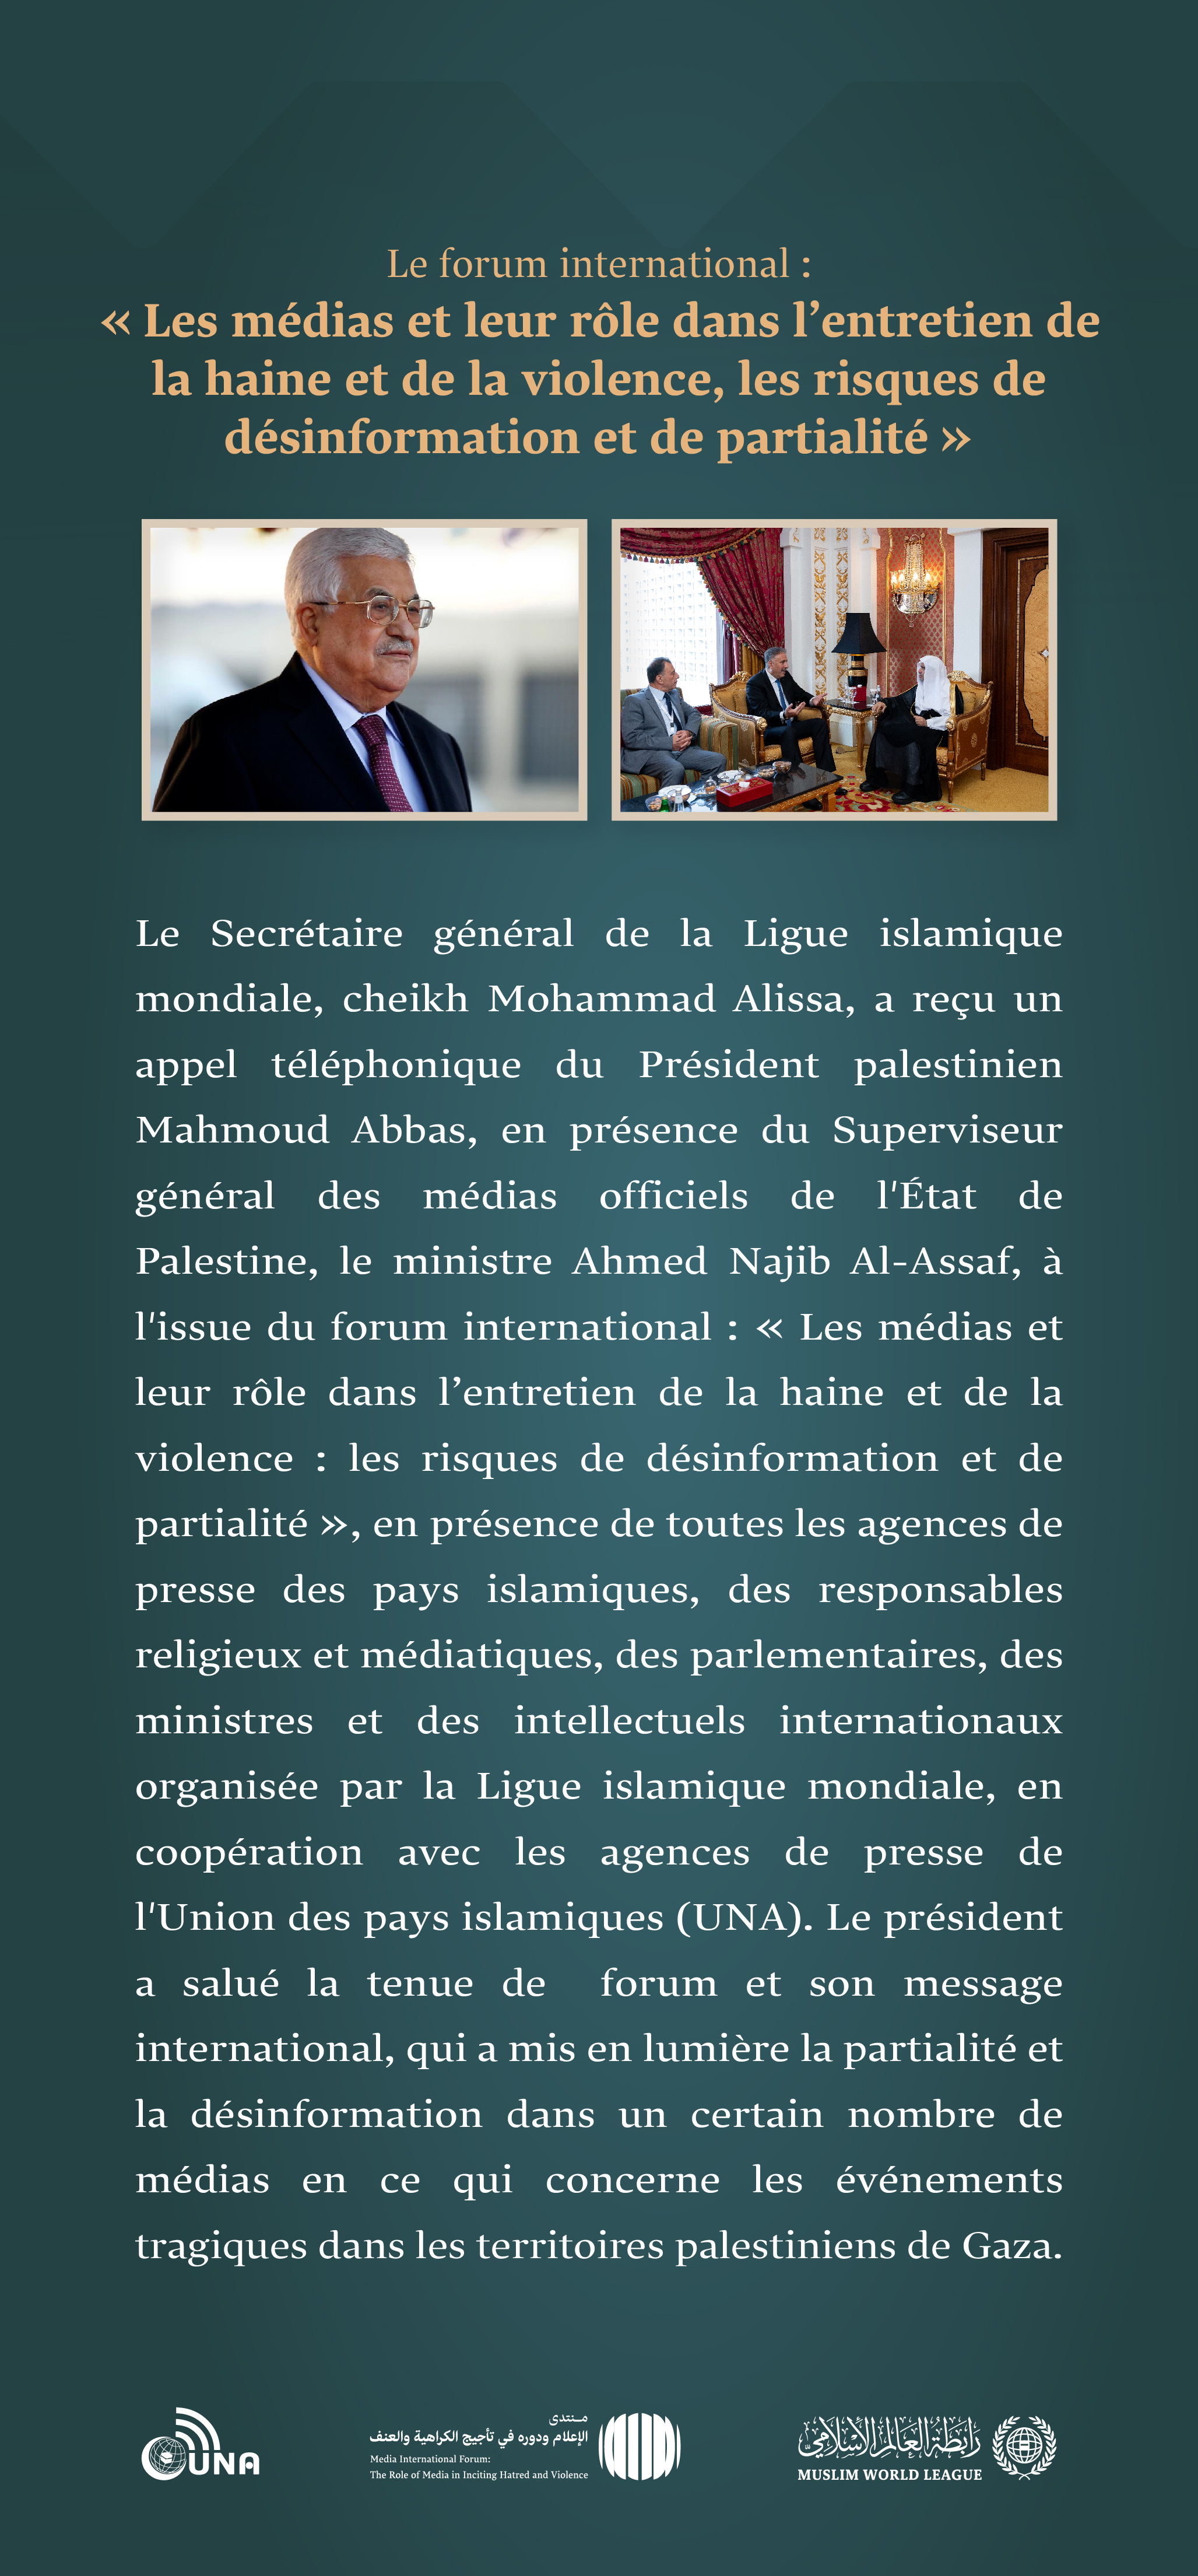 Le Secrétaire général Mohammad Alissa reçoit un appel téléphonique du Président de l’Autorité palestinienne Mahmoud Abass.